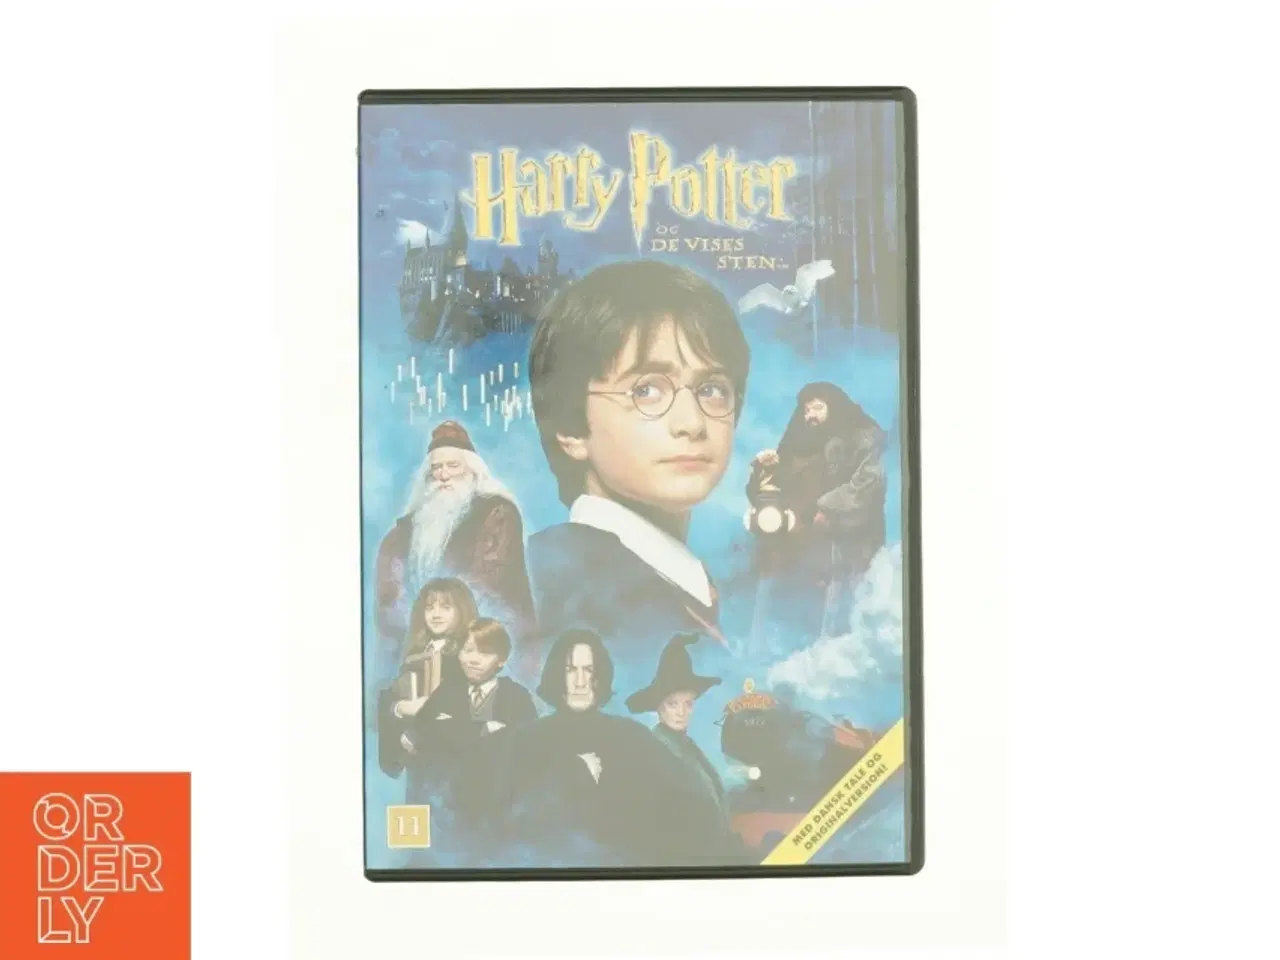 Billede 1 - Harry Potter Og De Vises Sten fra DVD